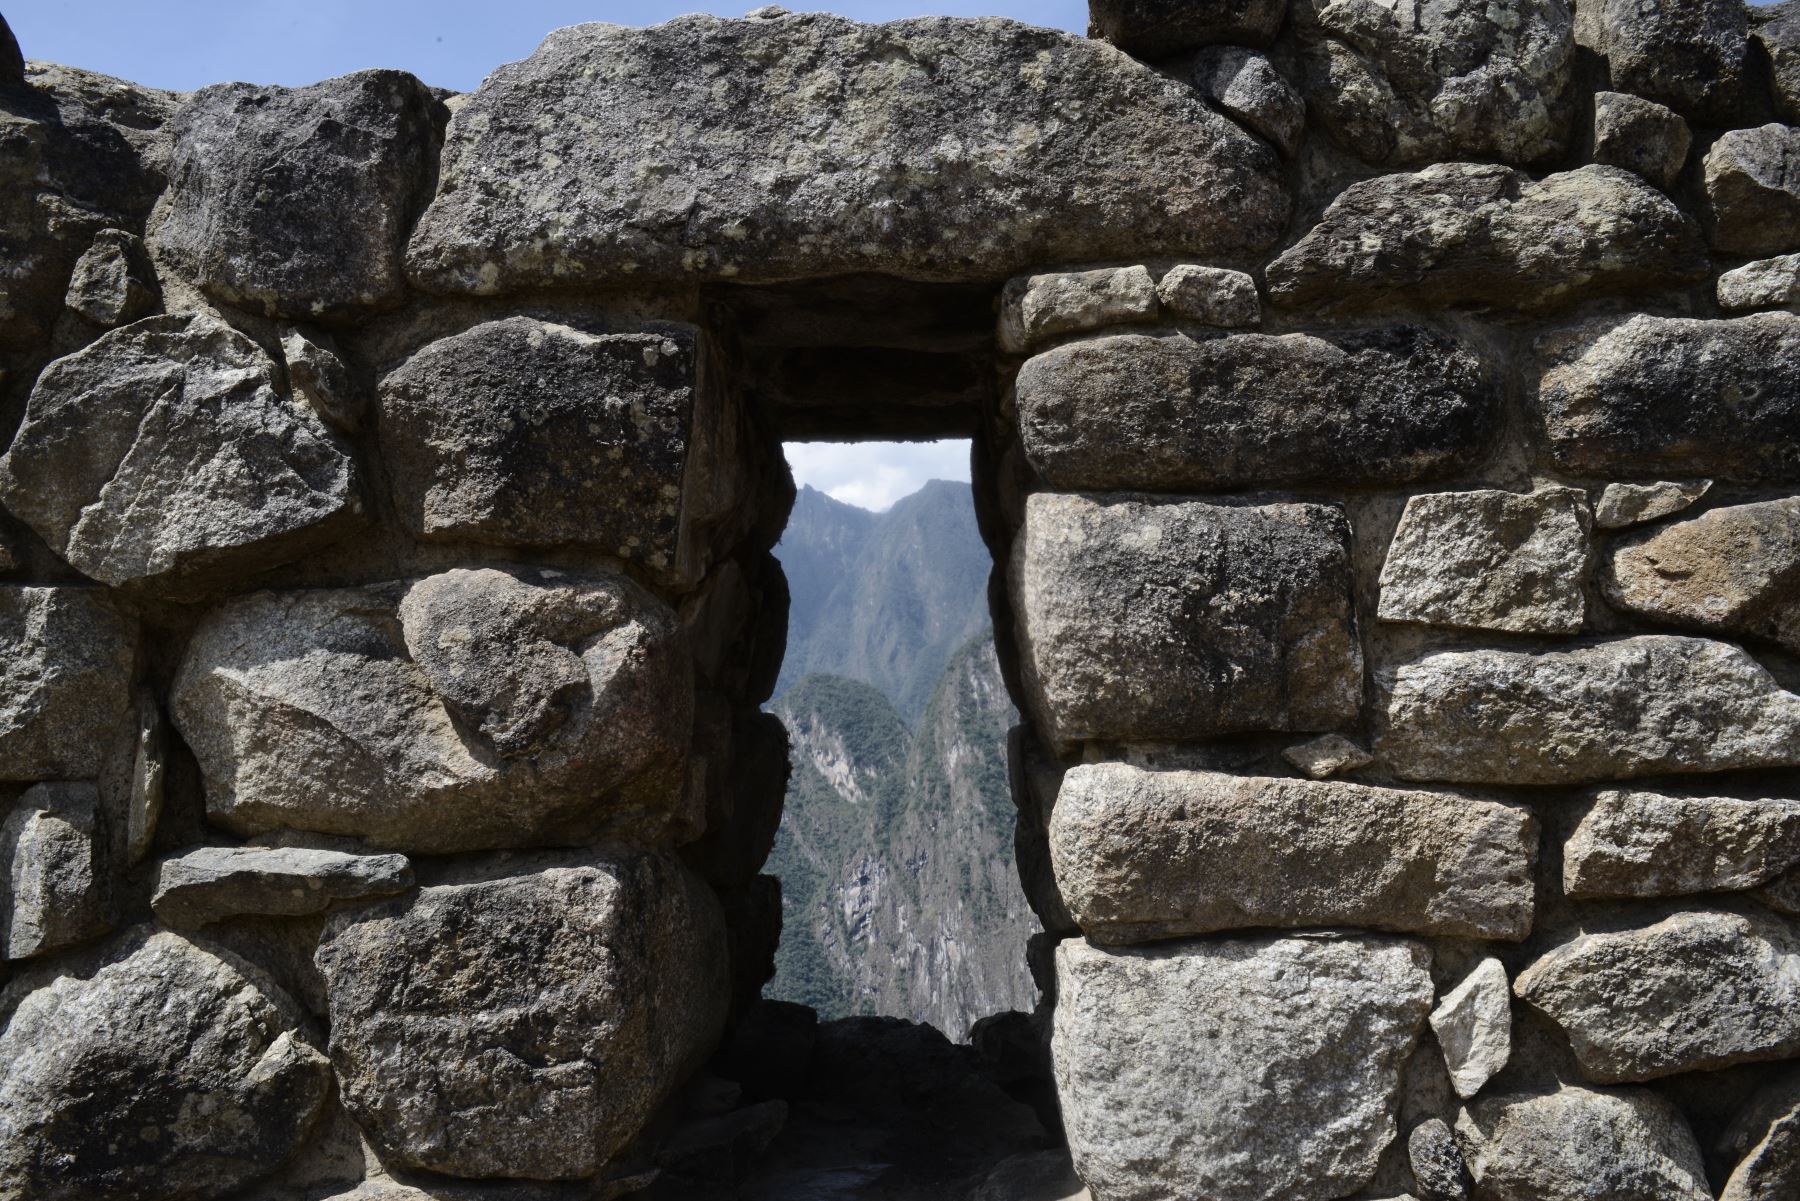 Esta foto tomada el 27 de agosto de 2016 muestra una vista parcial de las ruinas de Machu Picchu, que se encuentra a 2.430 metros sobre el nivel del mar.
Incrustado en un paisaje espectacular en el punto de encuentro entre los Andes peruanos y la cuenca del Amazonas, el Santuario Histórico de Machu Picchu es uno de los mayores logros artísticos, arquitectónicos y de uso de la tierra en cualquier lugar y el legado tangible más significativo de la civilización Inca. / AFP